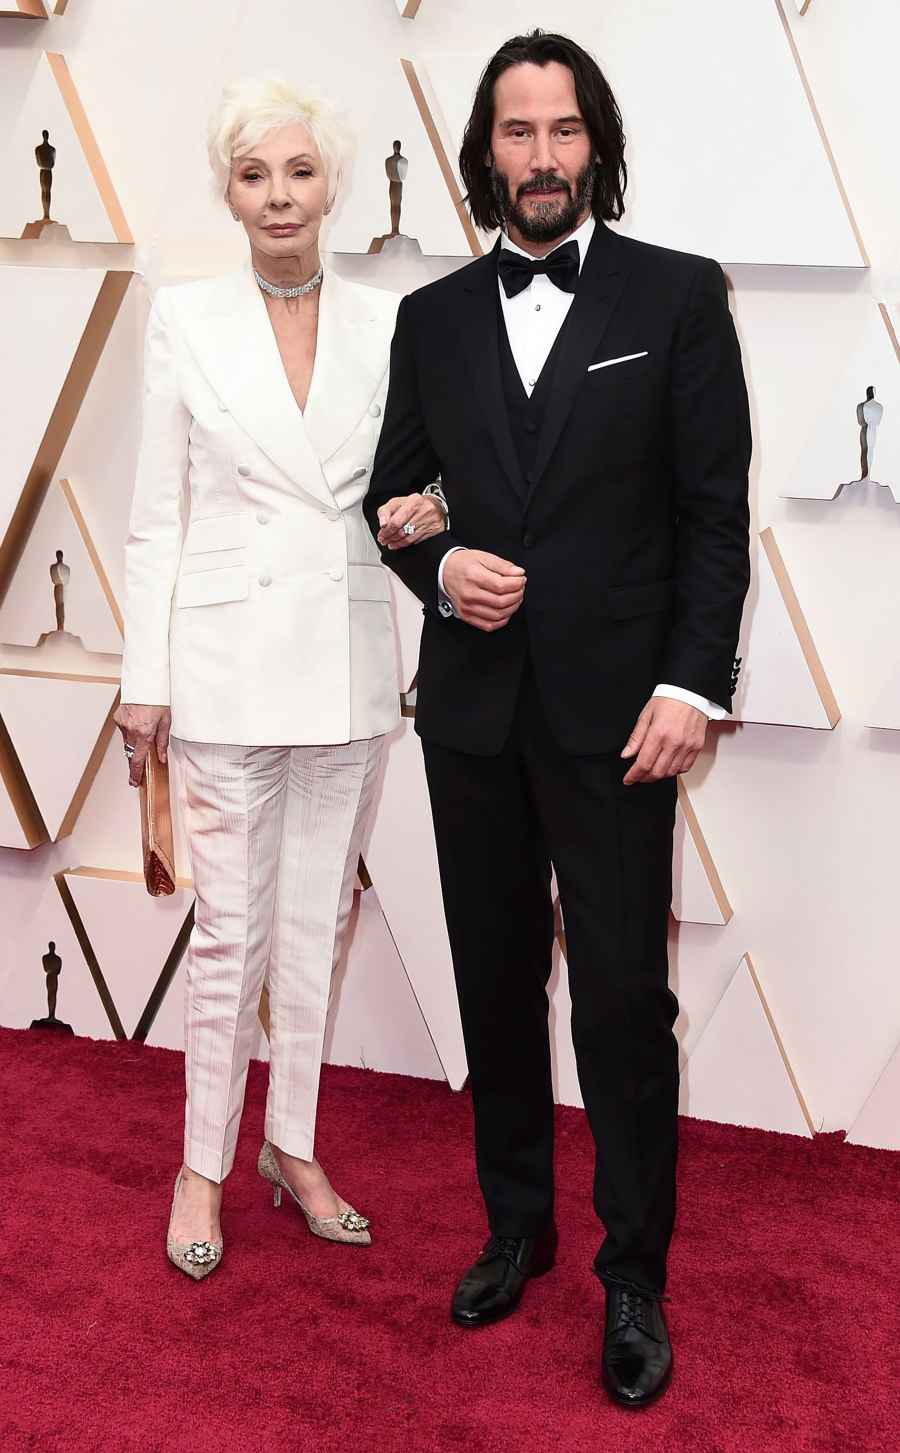 Oscars 2020 Best Dressed Men - Keanu Reeves